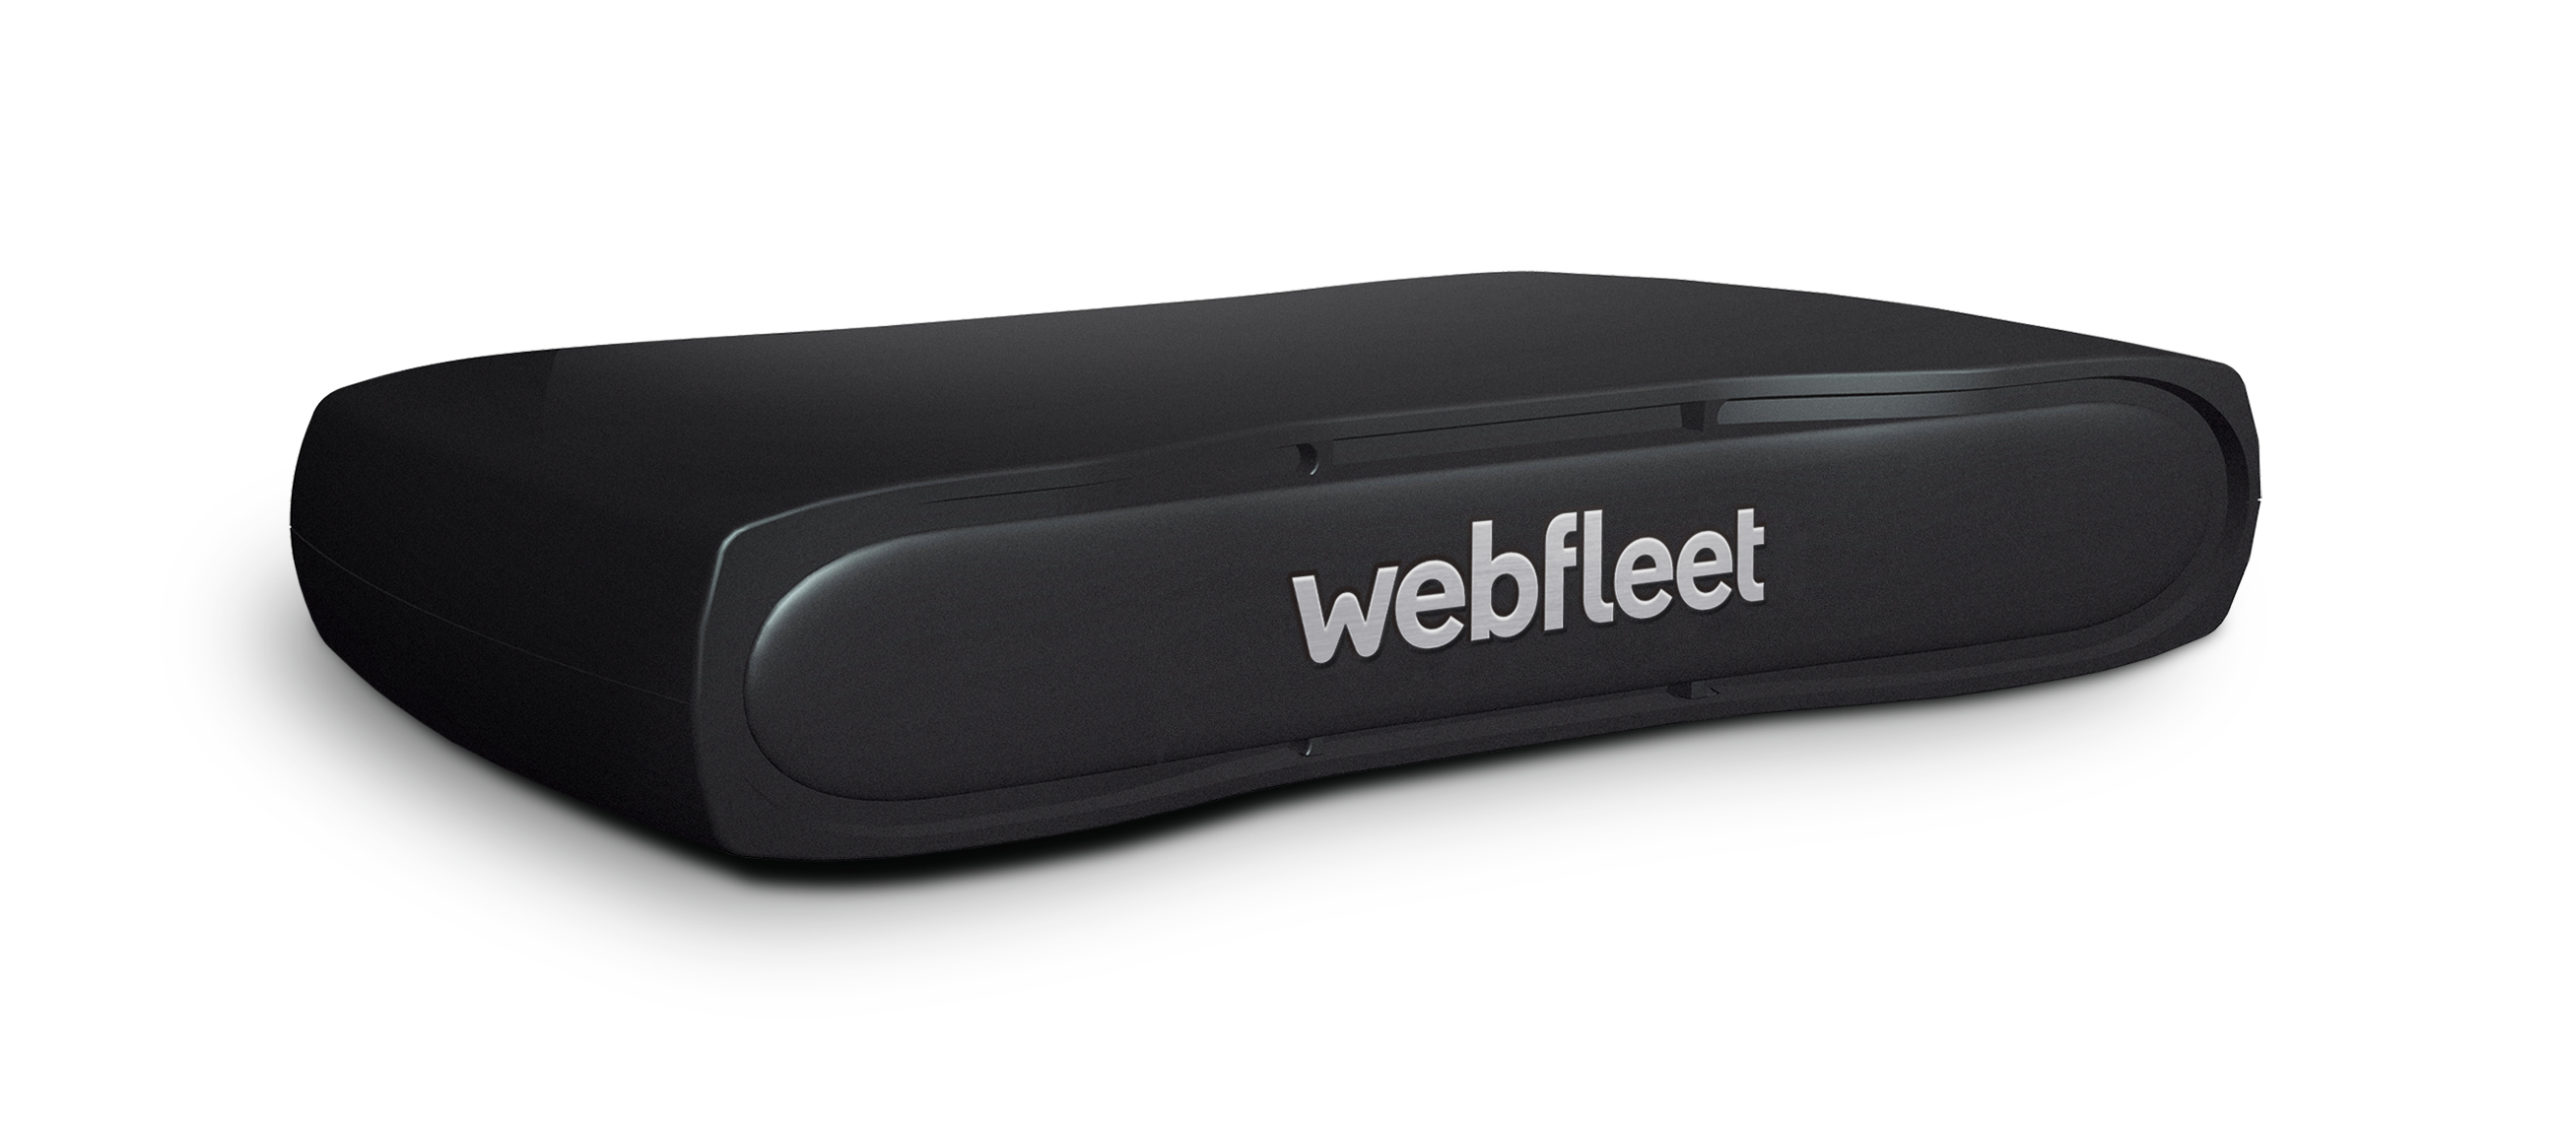 Webfleet , Webfleet Kompatible , Webfleet Software , Webfleet GPS , GPS Tracking , GPS , Webfleet OBD , Fahrzeug GPS , obd , GPS Schnittstelle , Webfleet Schnittstelle ,